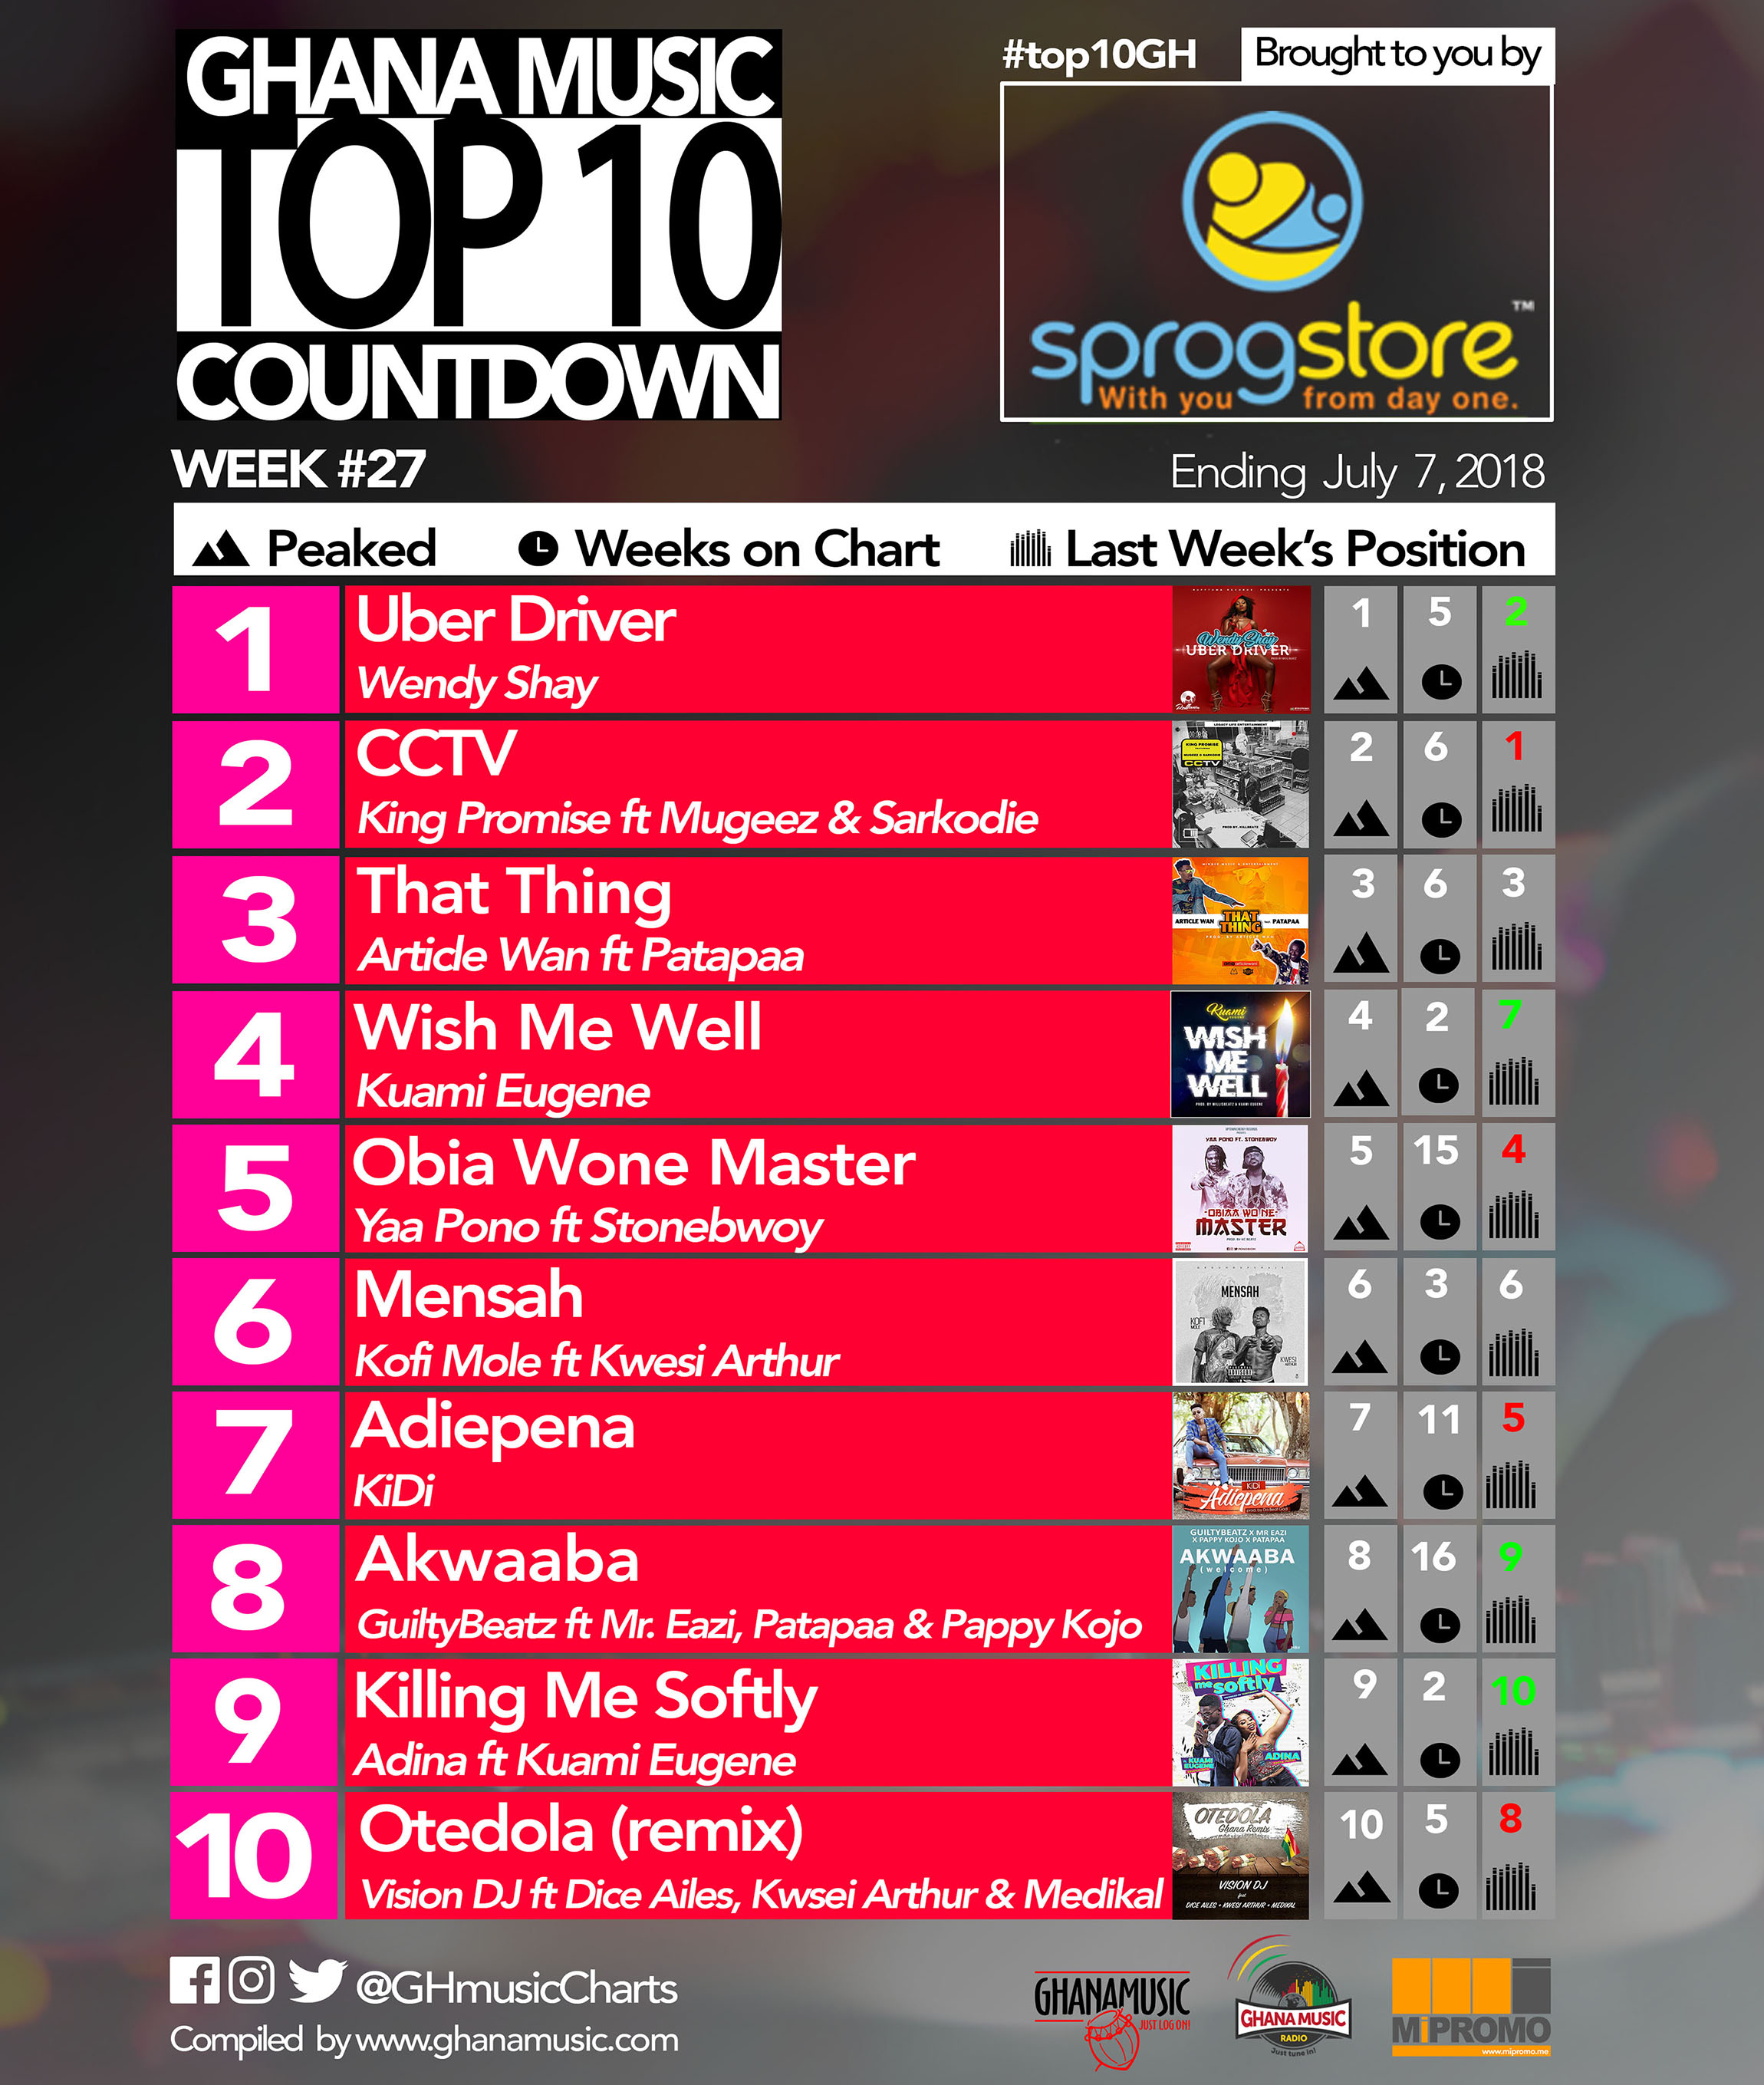 Week #27: Ghana Music Top 10 Countdown